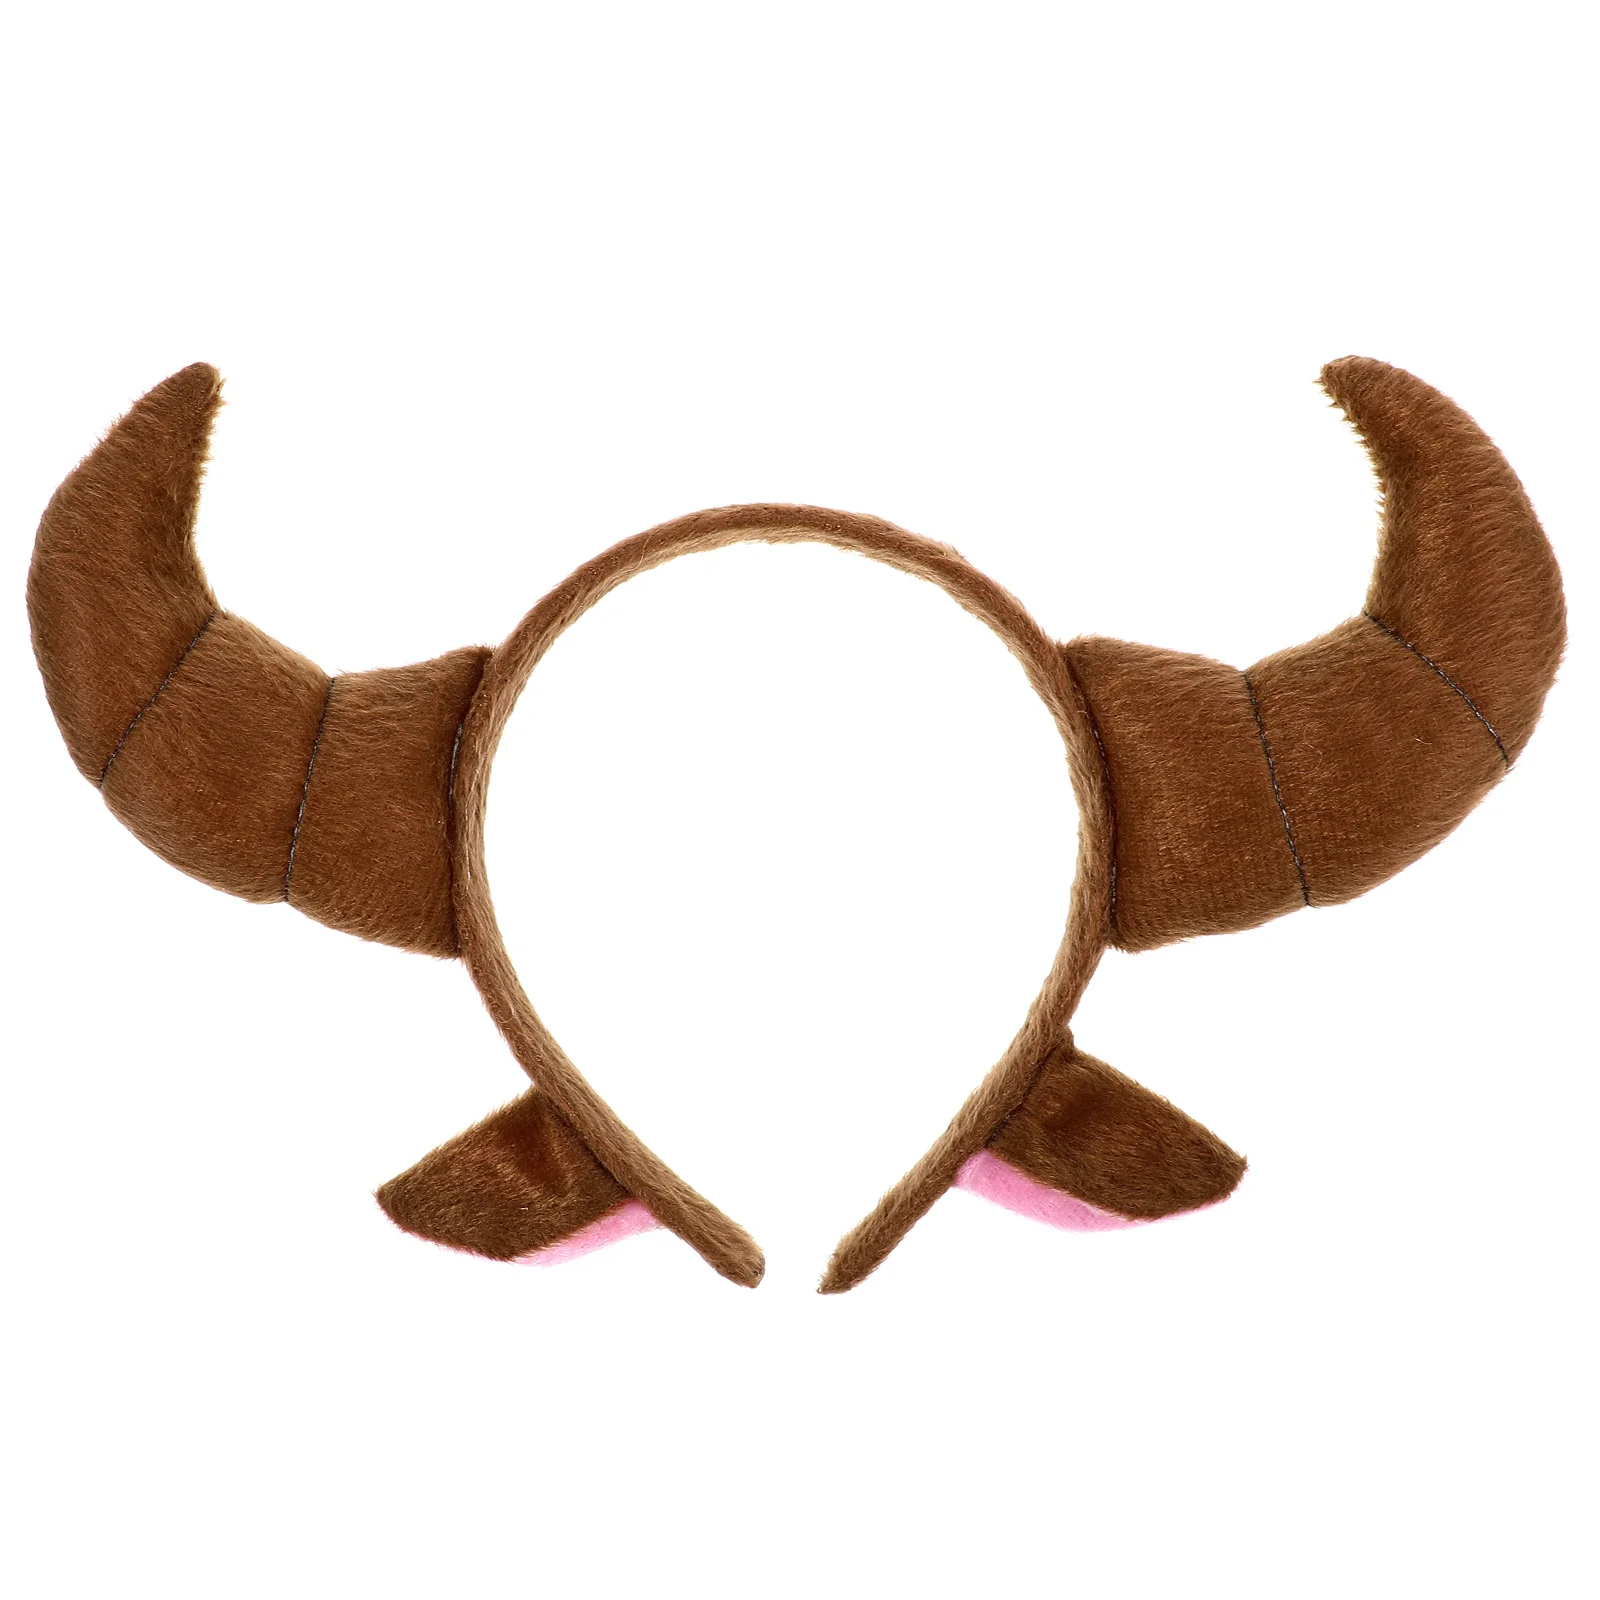 

Головной убор Ox Horn декоративный ободок с животными, головной убор для фестиваля, вечеринки, косплея, костюма, аксессуары